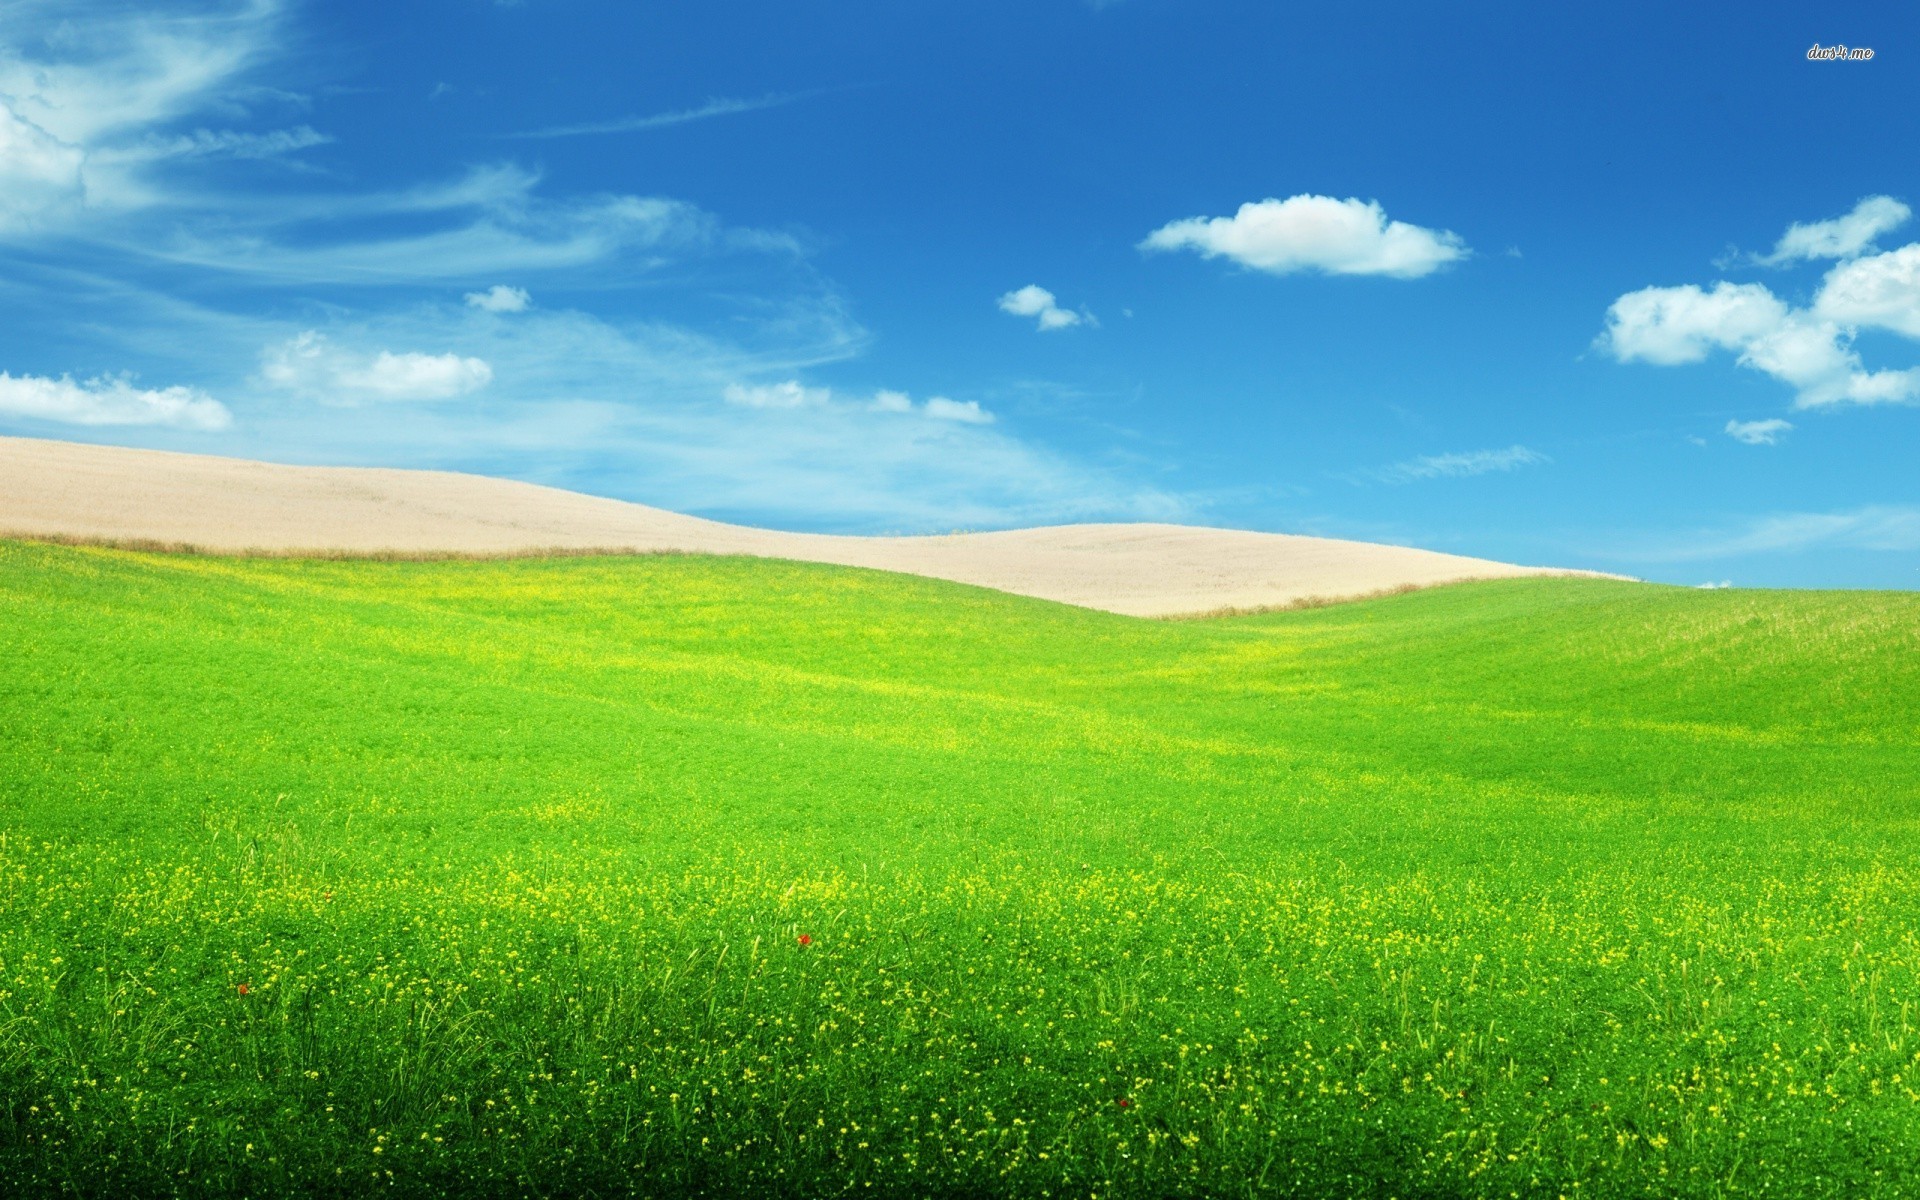 50 Hình nền cỏ xanh tươi mát đẹp cho máy tính điện thoại